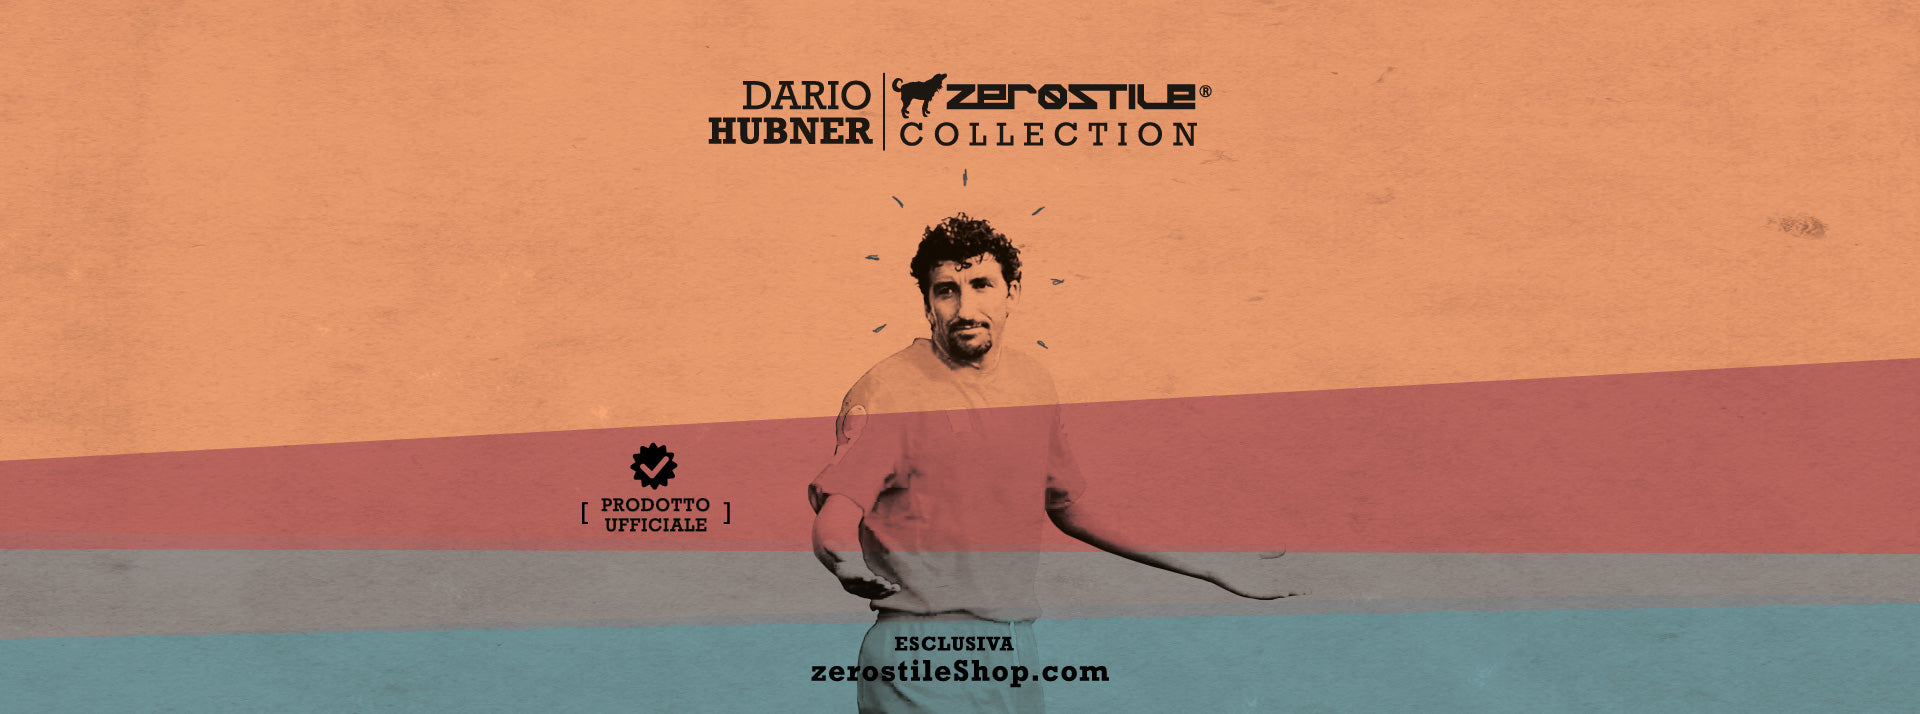 Dario Hübner Collection